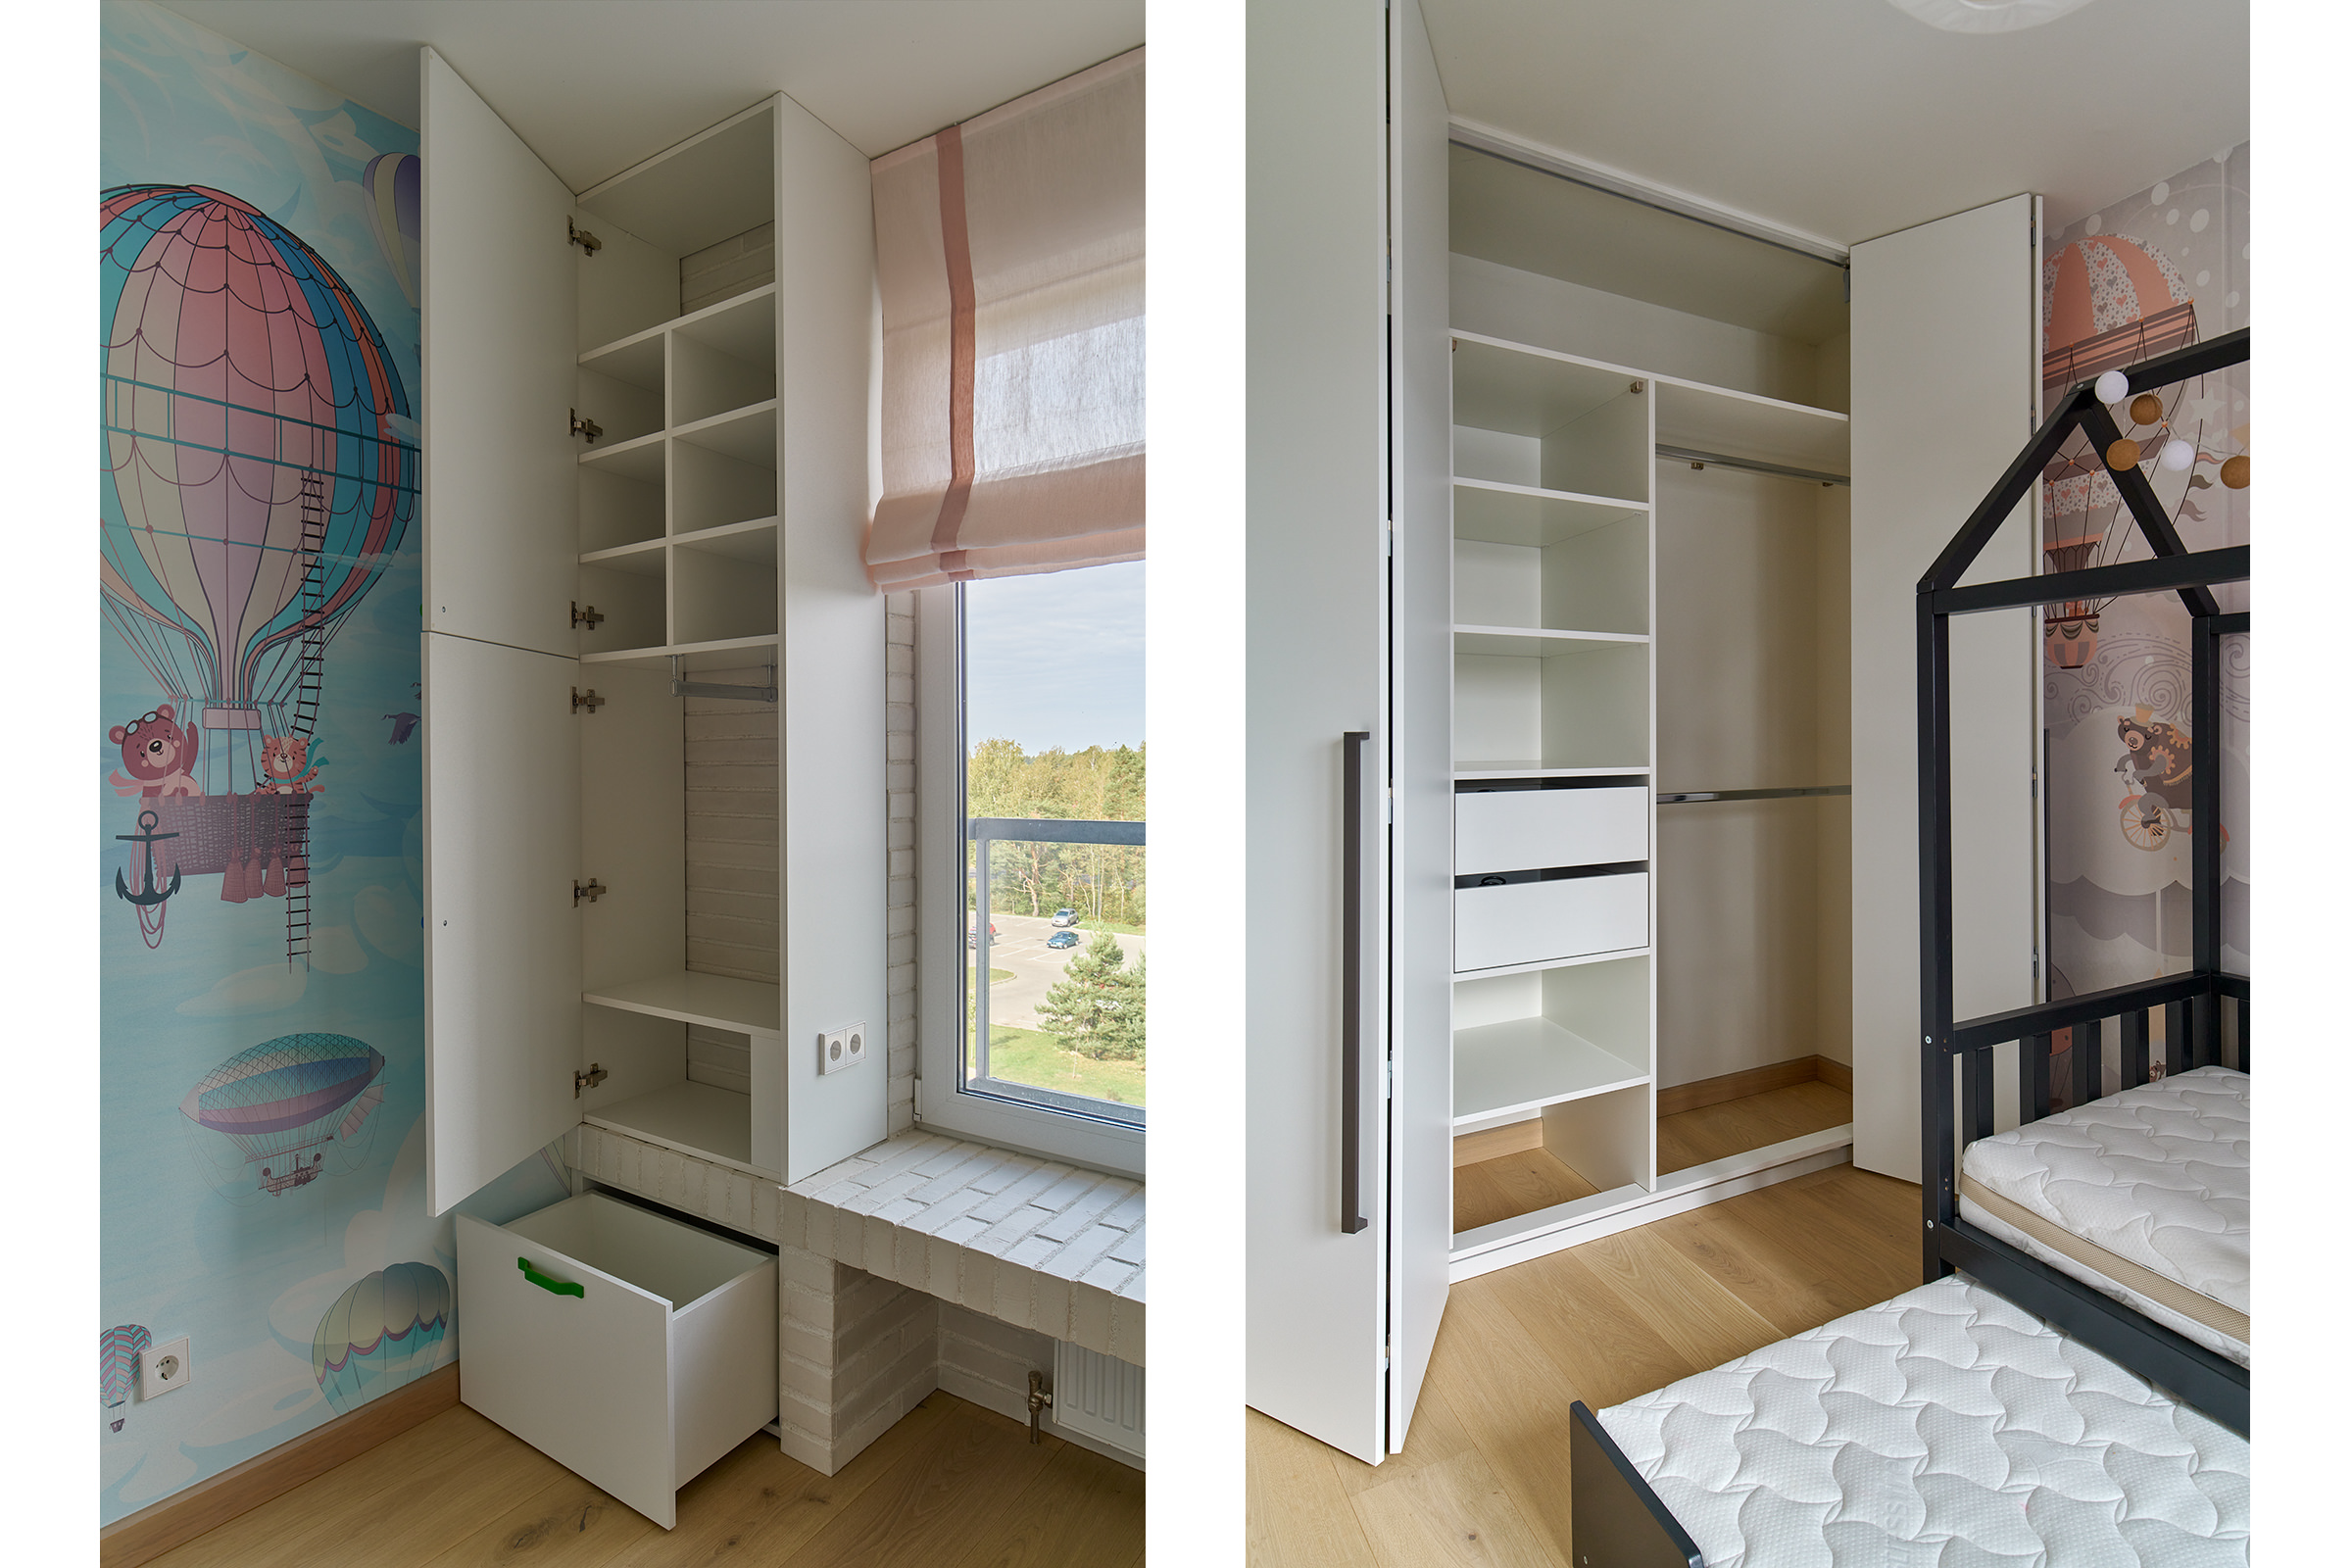 Фото шкафа с потайными выдвижными ящиками и развижной двухярусной кроватью в интерьере детской комнаты